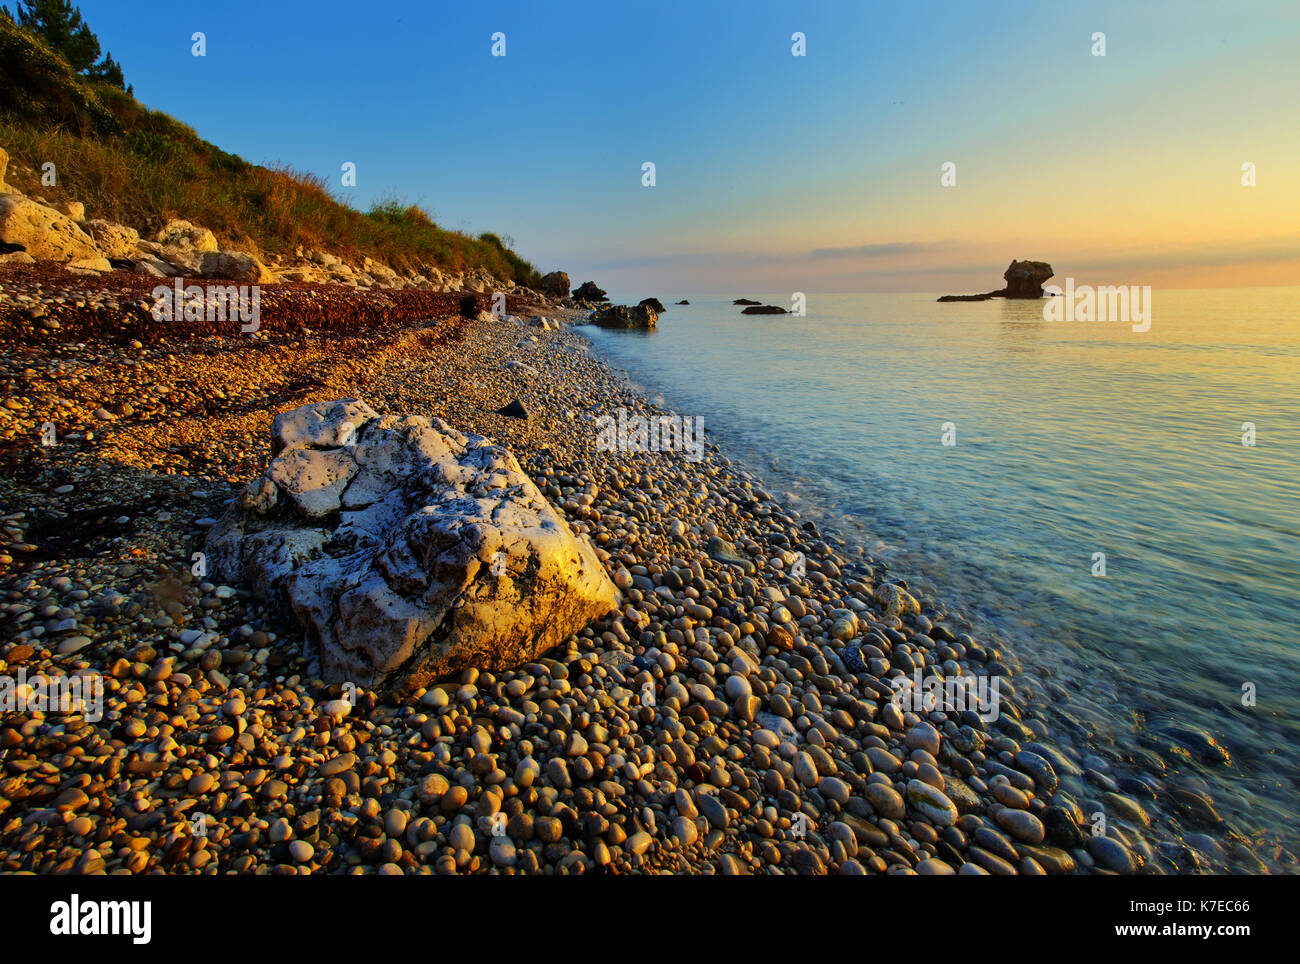 Limenia Beach in der Nähe von Poros, Kefalonia, Griechenland Stockfoto